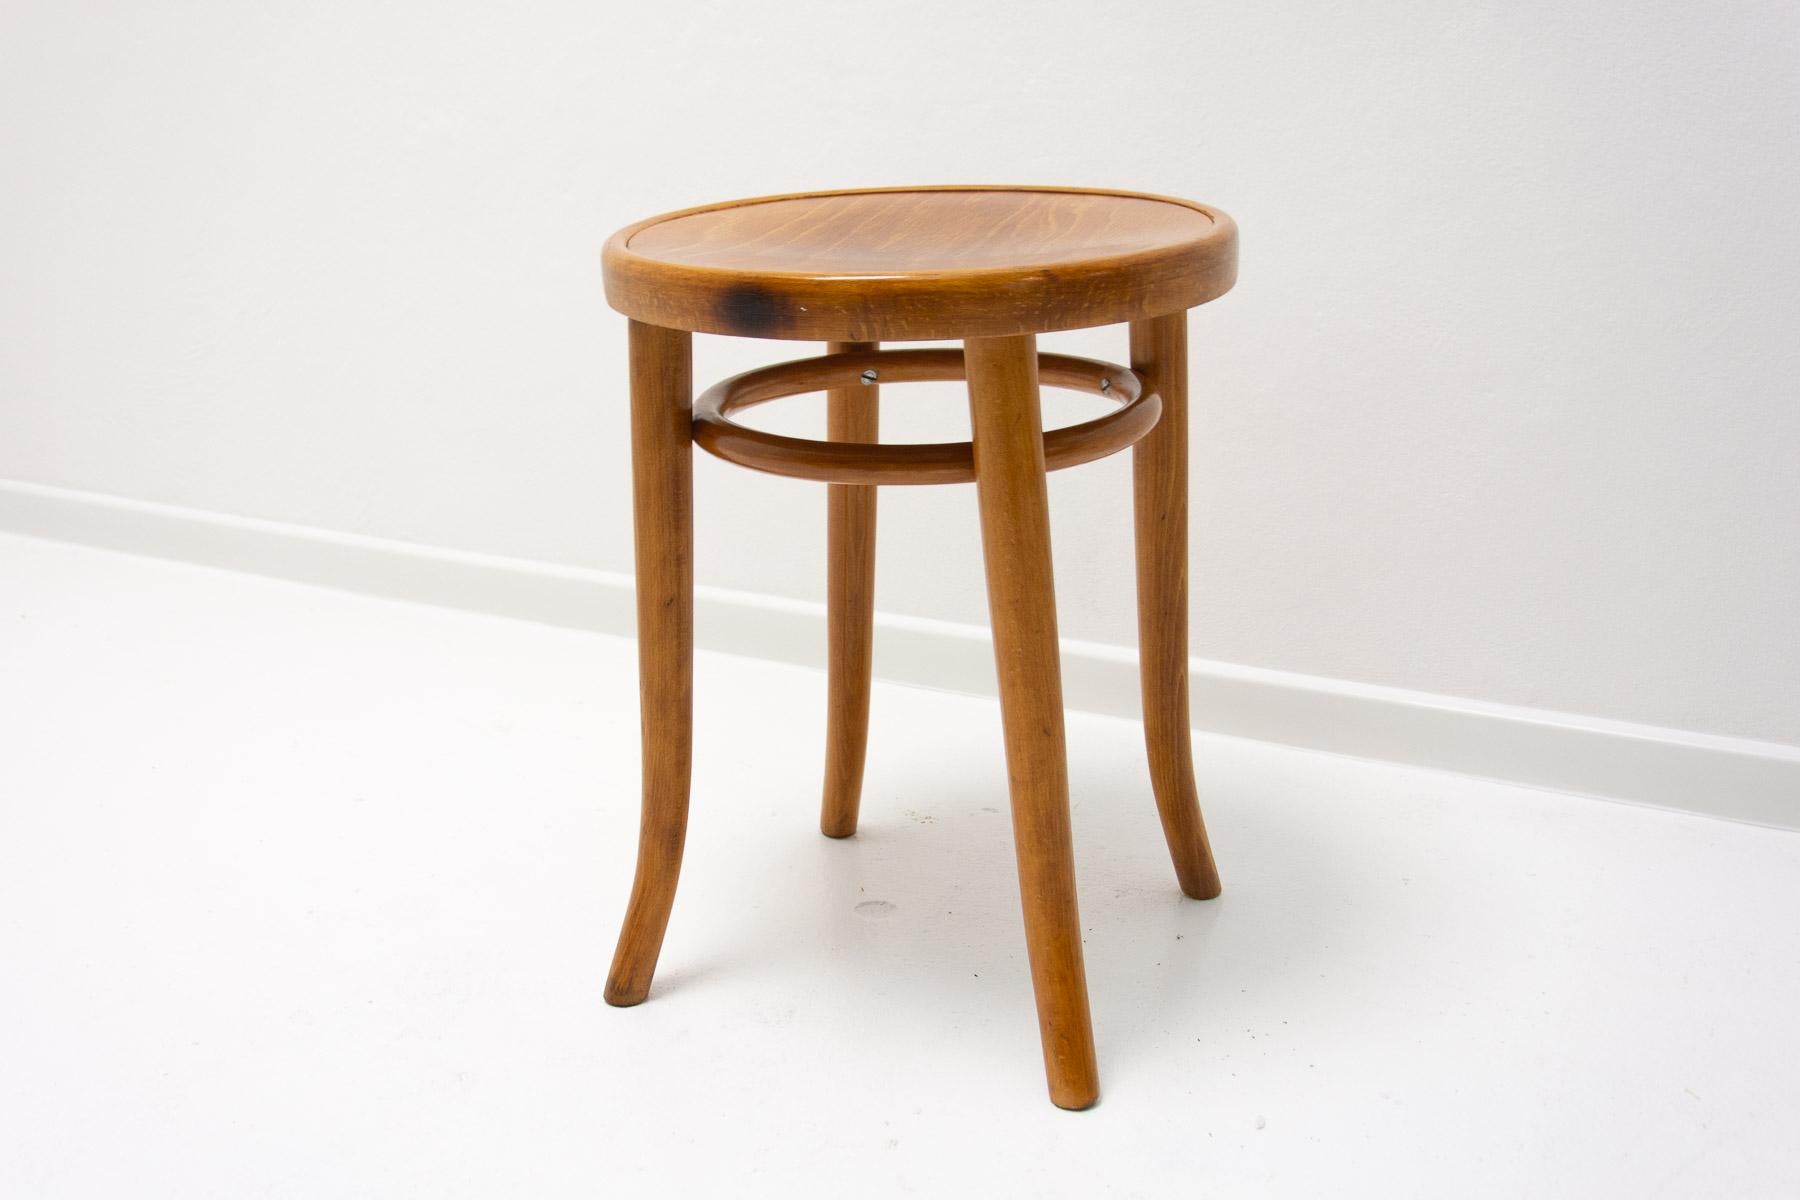 Ein klassischer Bugholzhocker aus den 1920er Jahren. Der runde Hocker ist aus Buche gefertigt und hat eine Sitzfläche aus Sperrholz. Herstellermarke unter dem Sitz eingeprägt.  In sehr gutem Zustand, nach Renovierung.

Höhe: 48 cm Breite: 37 cm